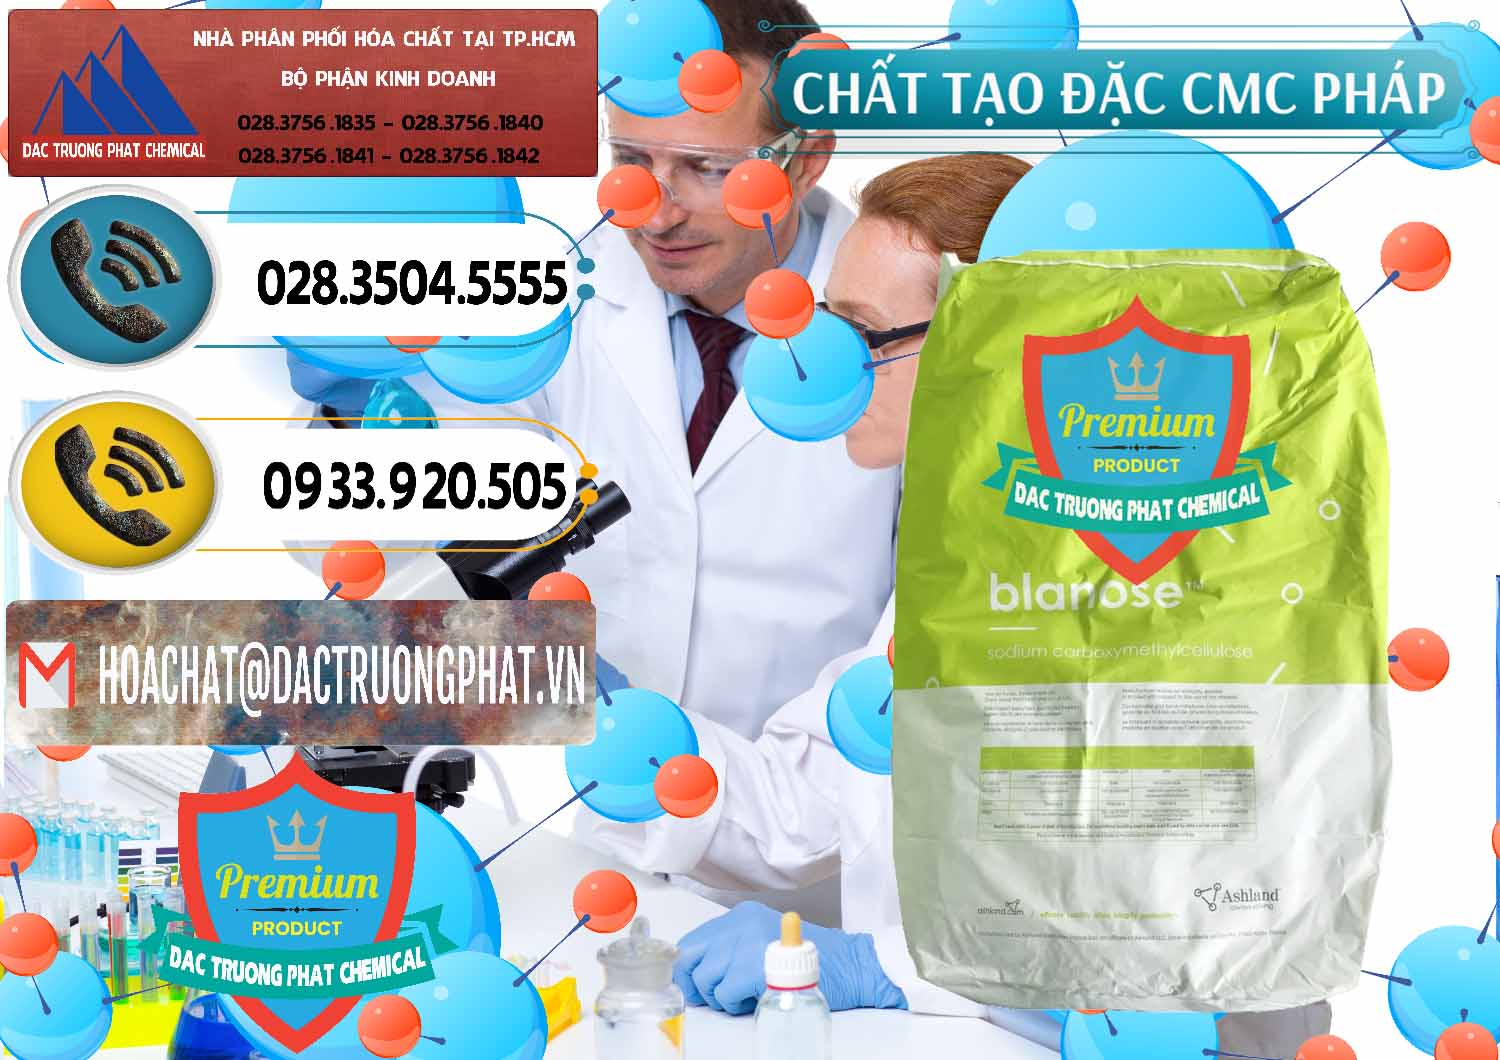 Cty bán - cung ứng Chất Tạo Đặc CMC - Carboxyl Methyl Cellulose Pháp France - 0394 - Cty bán ( phân phối ) hóa chất tại TP.HCM - hoachatdetnhuom.vn